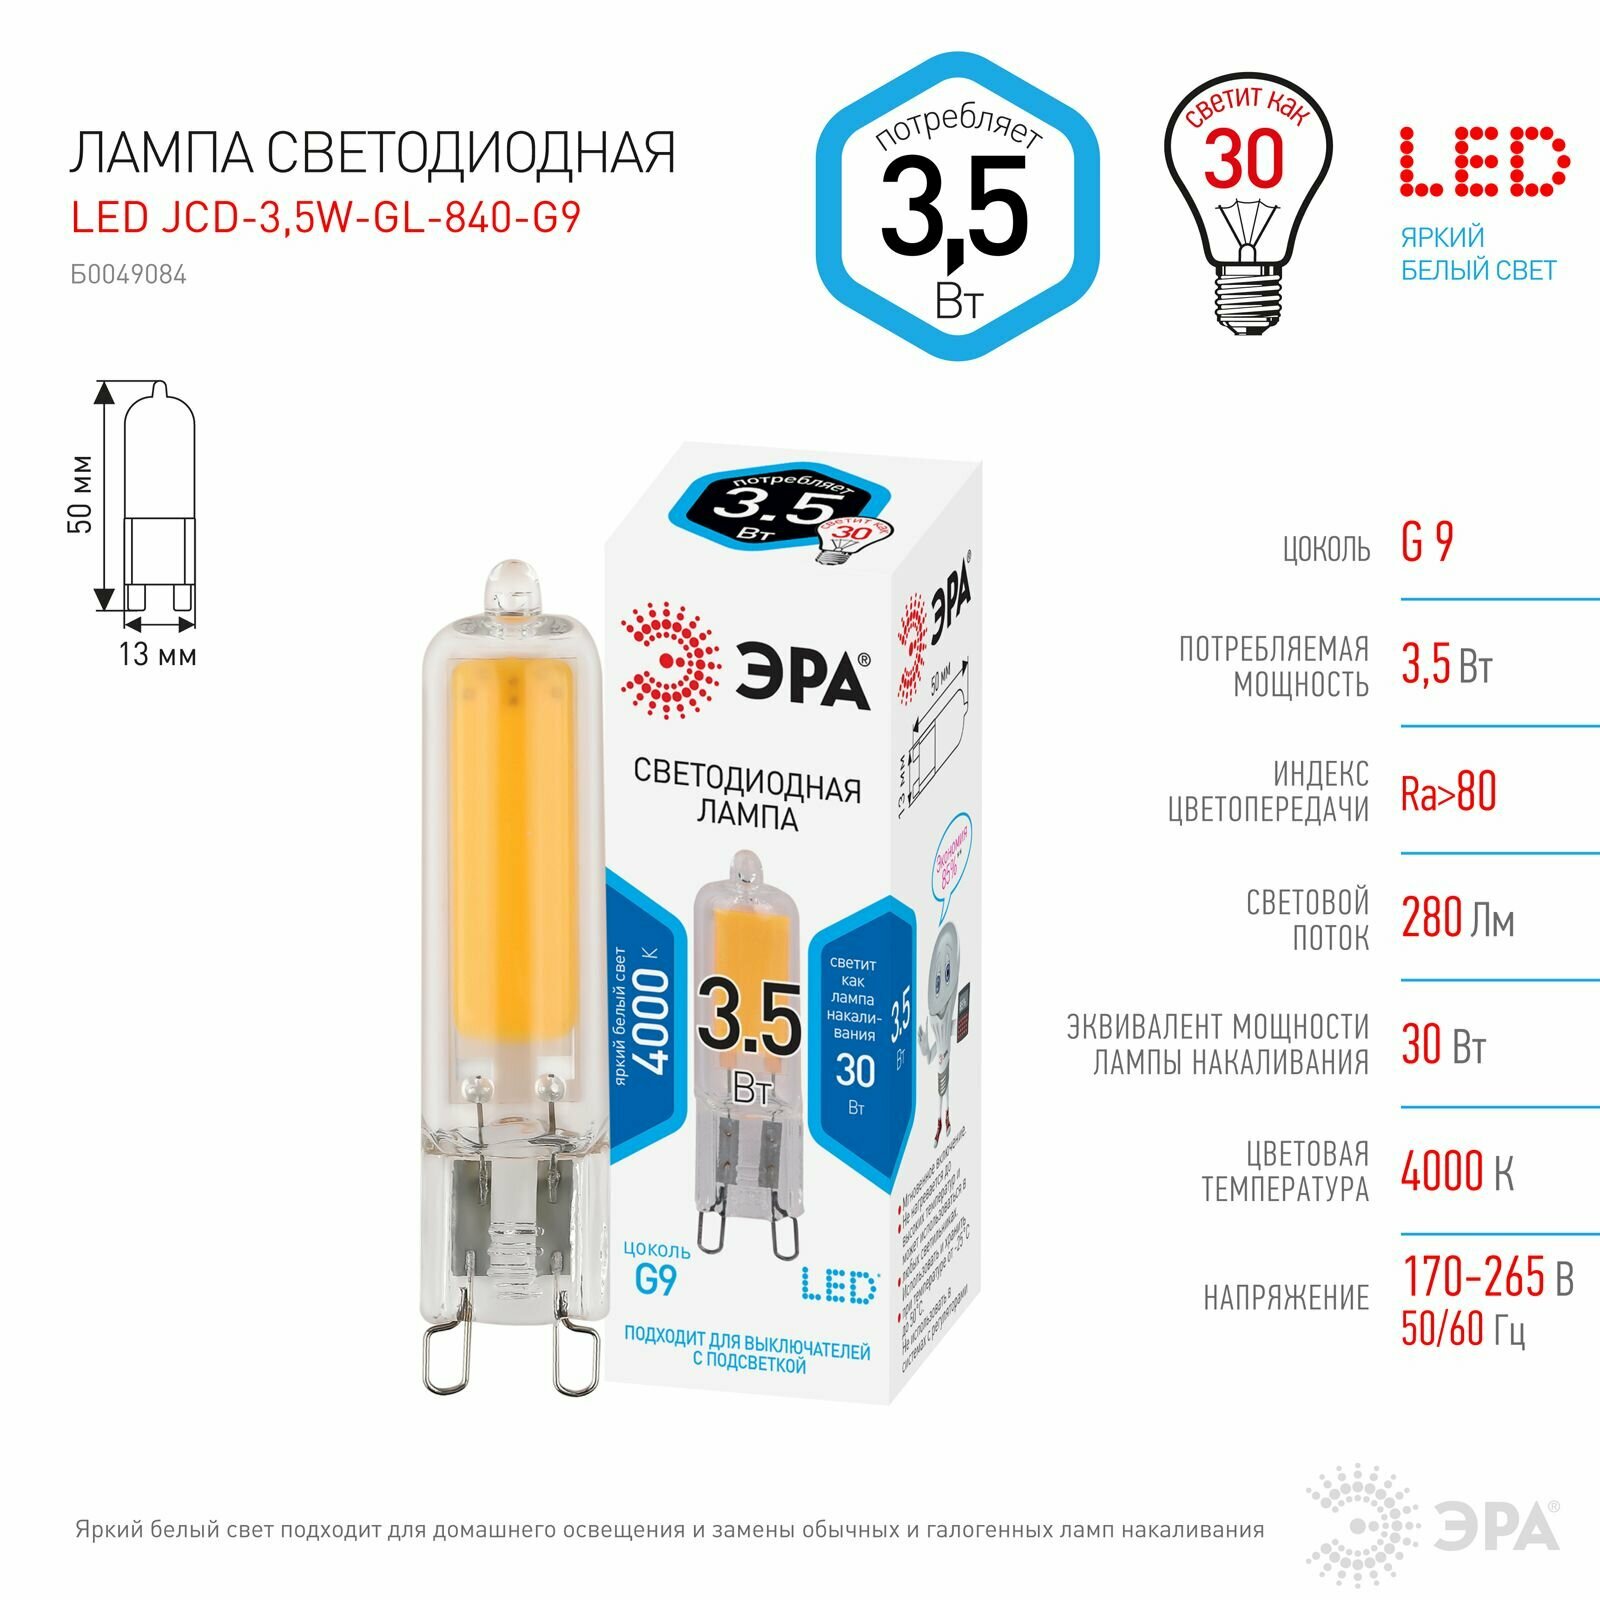 Лампочка светодиодная ЭРА STD LED JCD-3,5W-GL-840-G9 G9 3,5ВТ капсула нейтральный белый свет